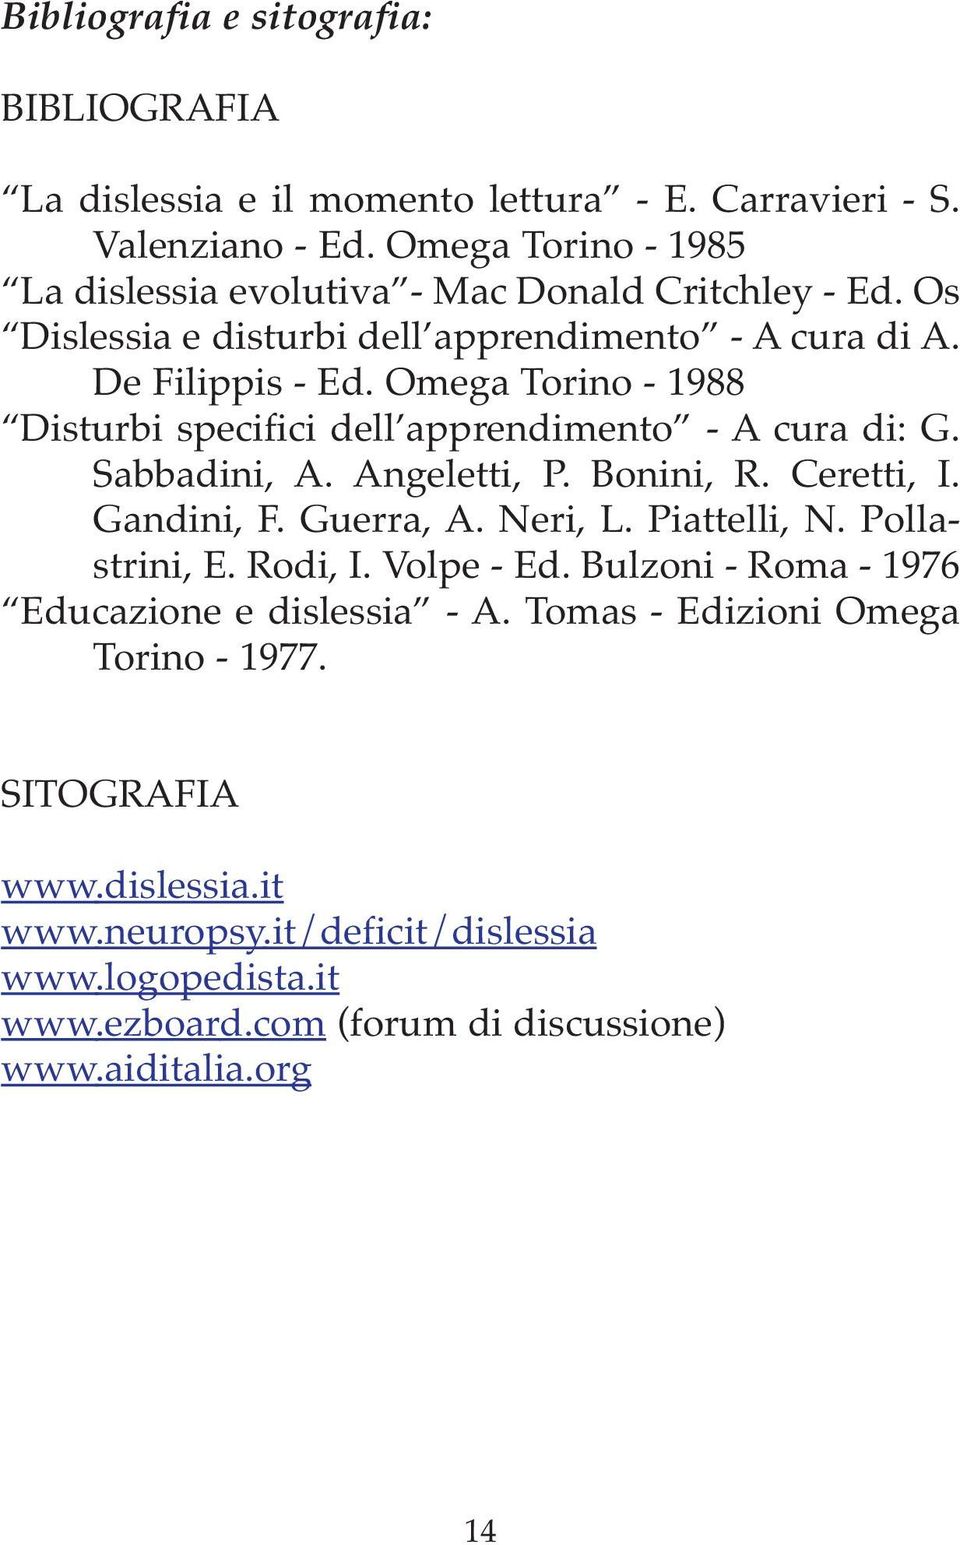 Omega Torino - 1988 Disturbi specifici dell apprendimento - A cura di: G. Sabbadini, A. Angeletti, P. Bonini, R. Ceretti, I. Gandini, F. Guerra, A. Neri, L. Piattelli, N.